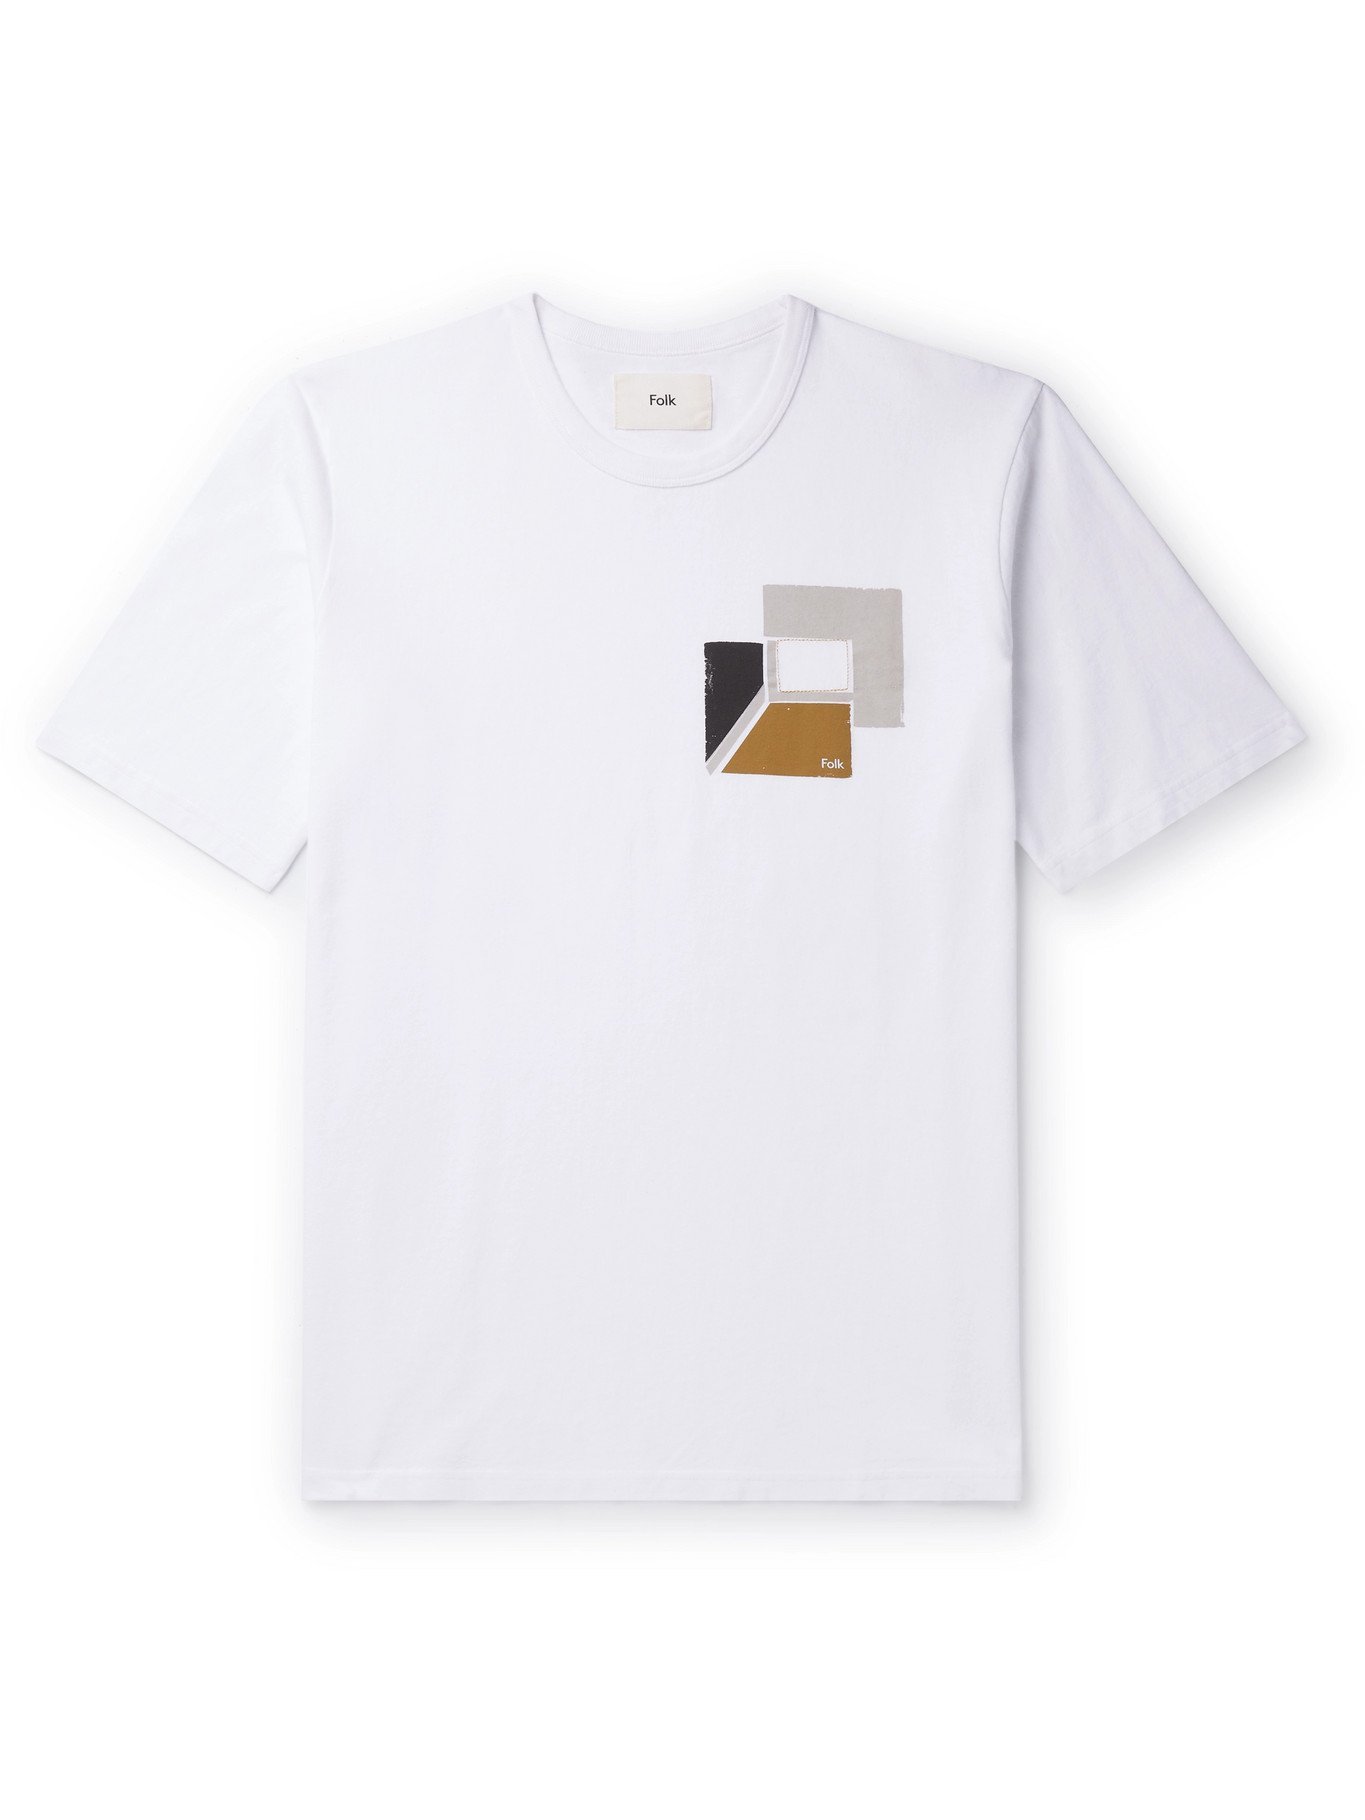 FOLK - Logo-Print Cotton-Jersey T-Shirt - White - 5 Folk